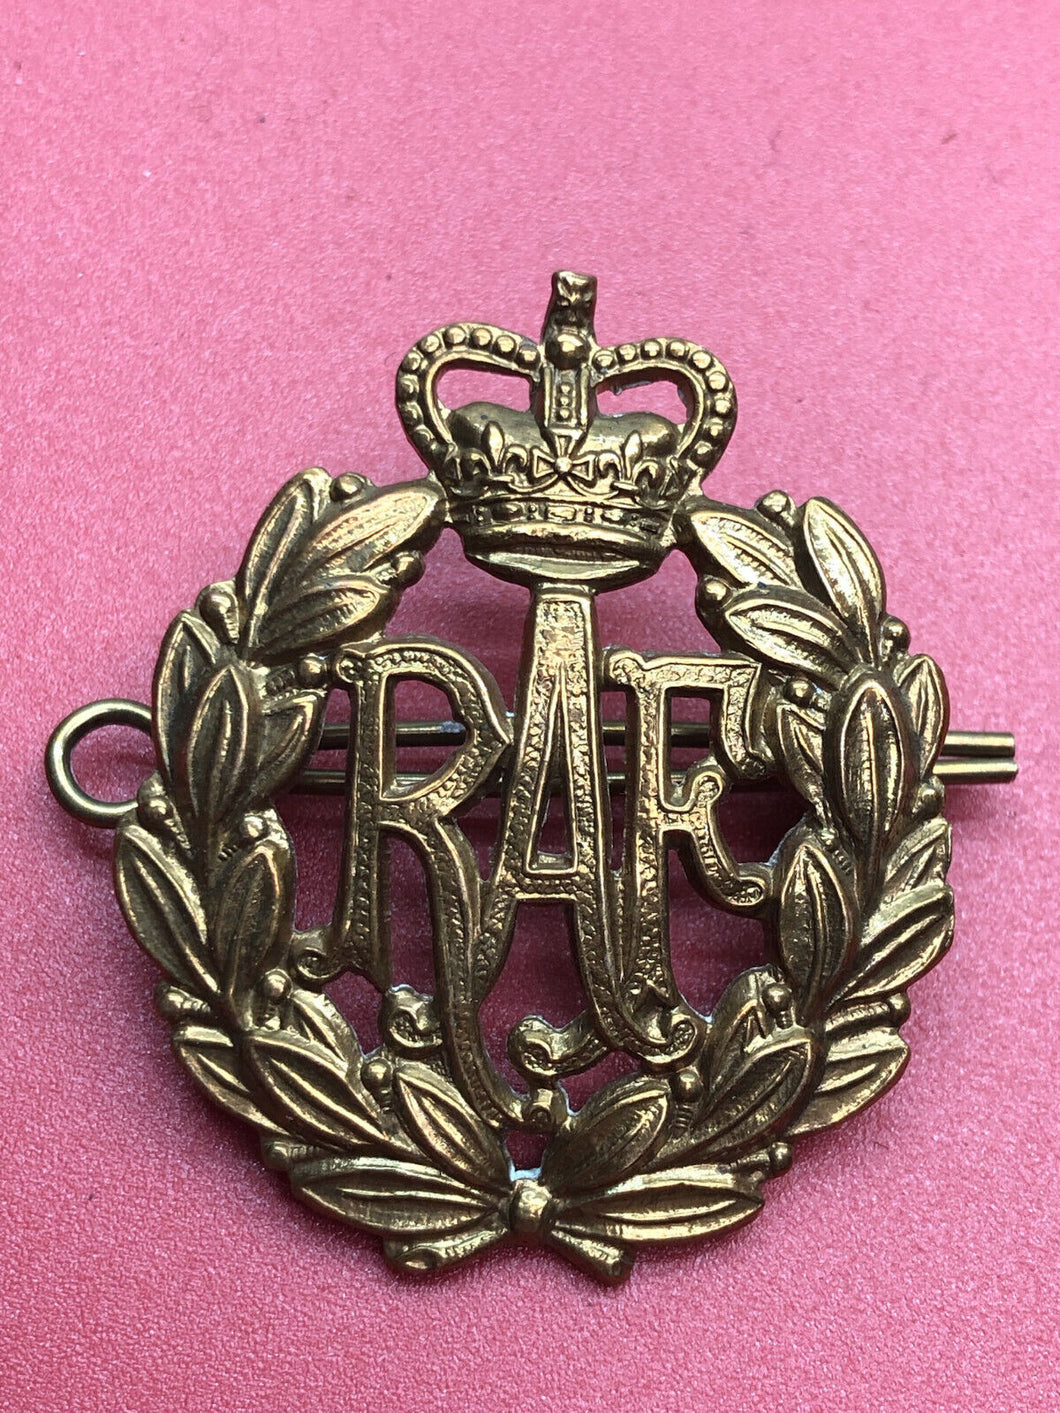 Genuine British Royal Air Force Cap Badge